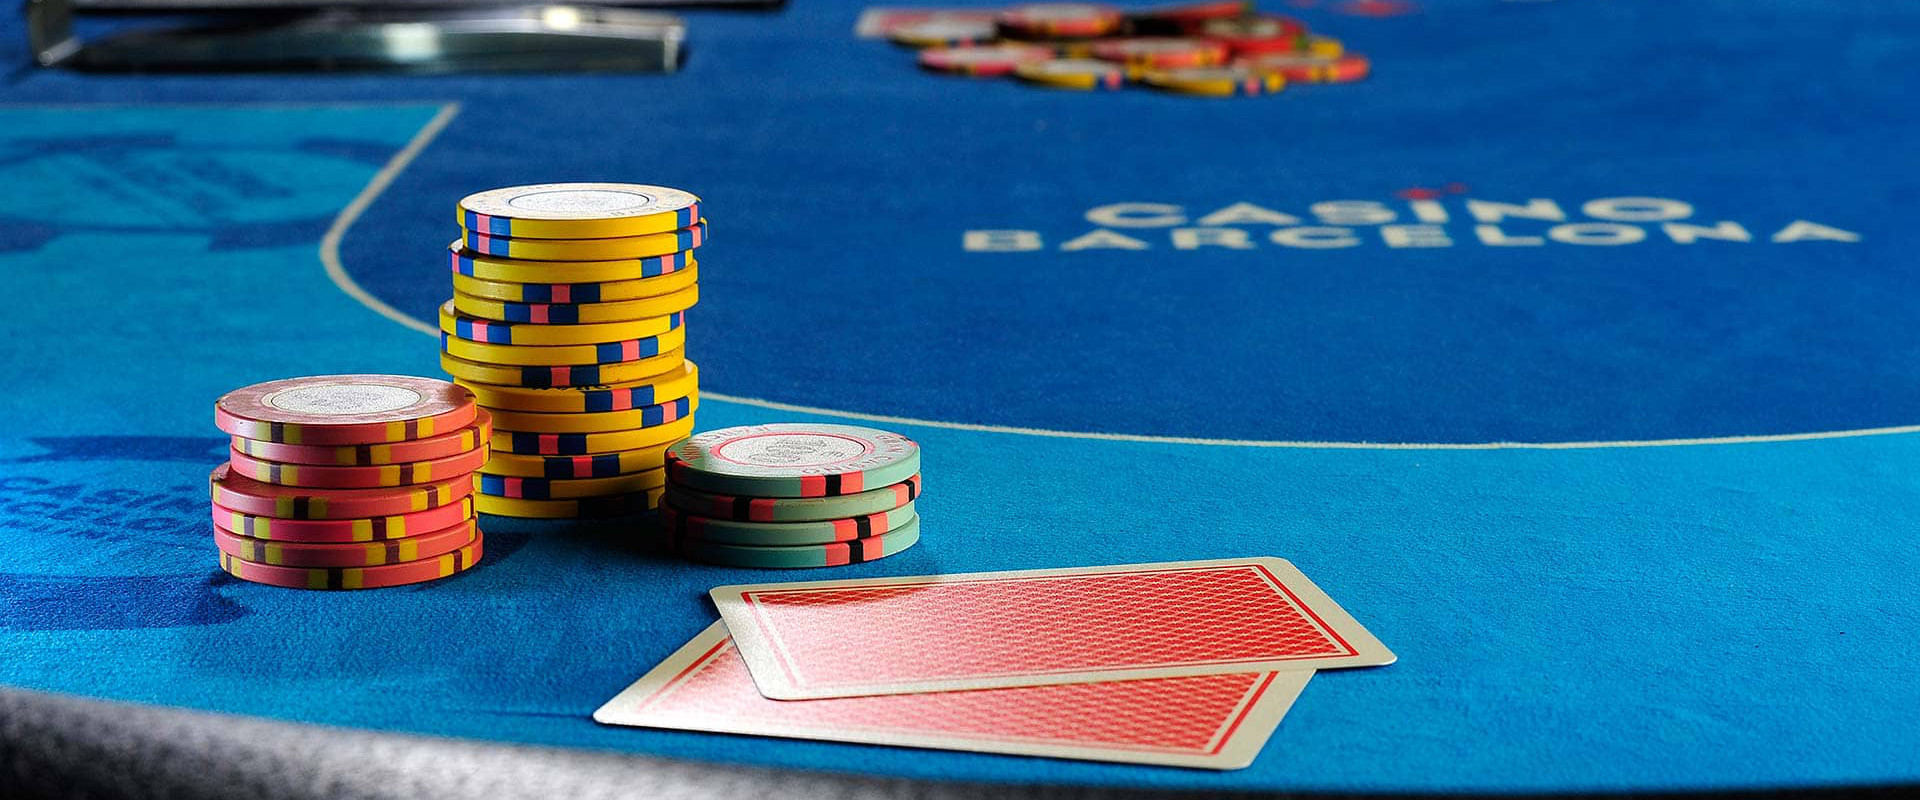 Казино барселона покер казино беларусь отзывы